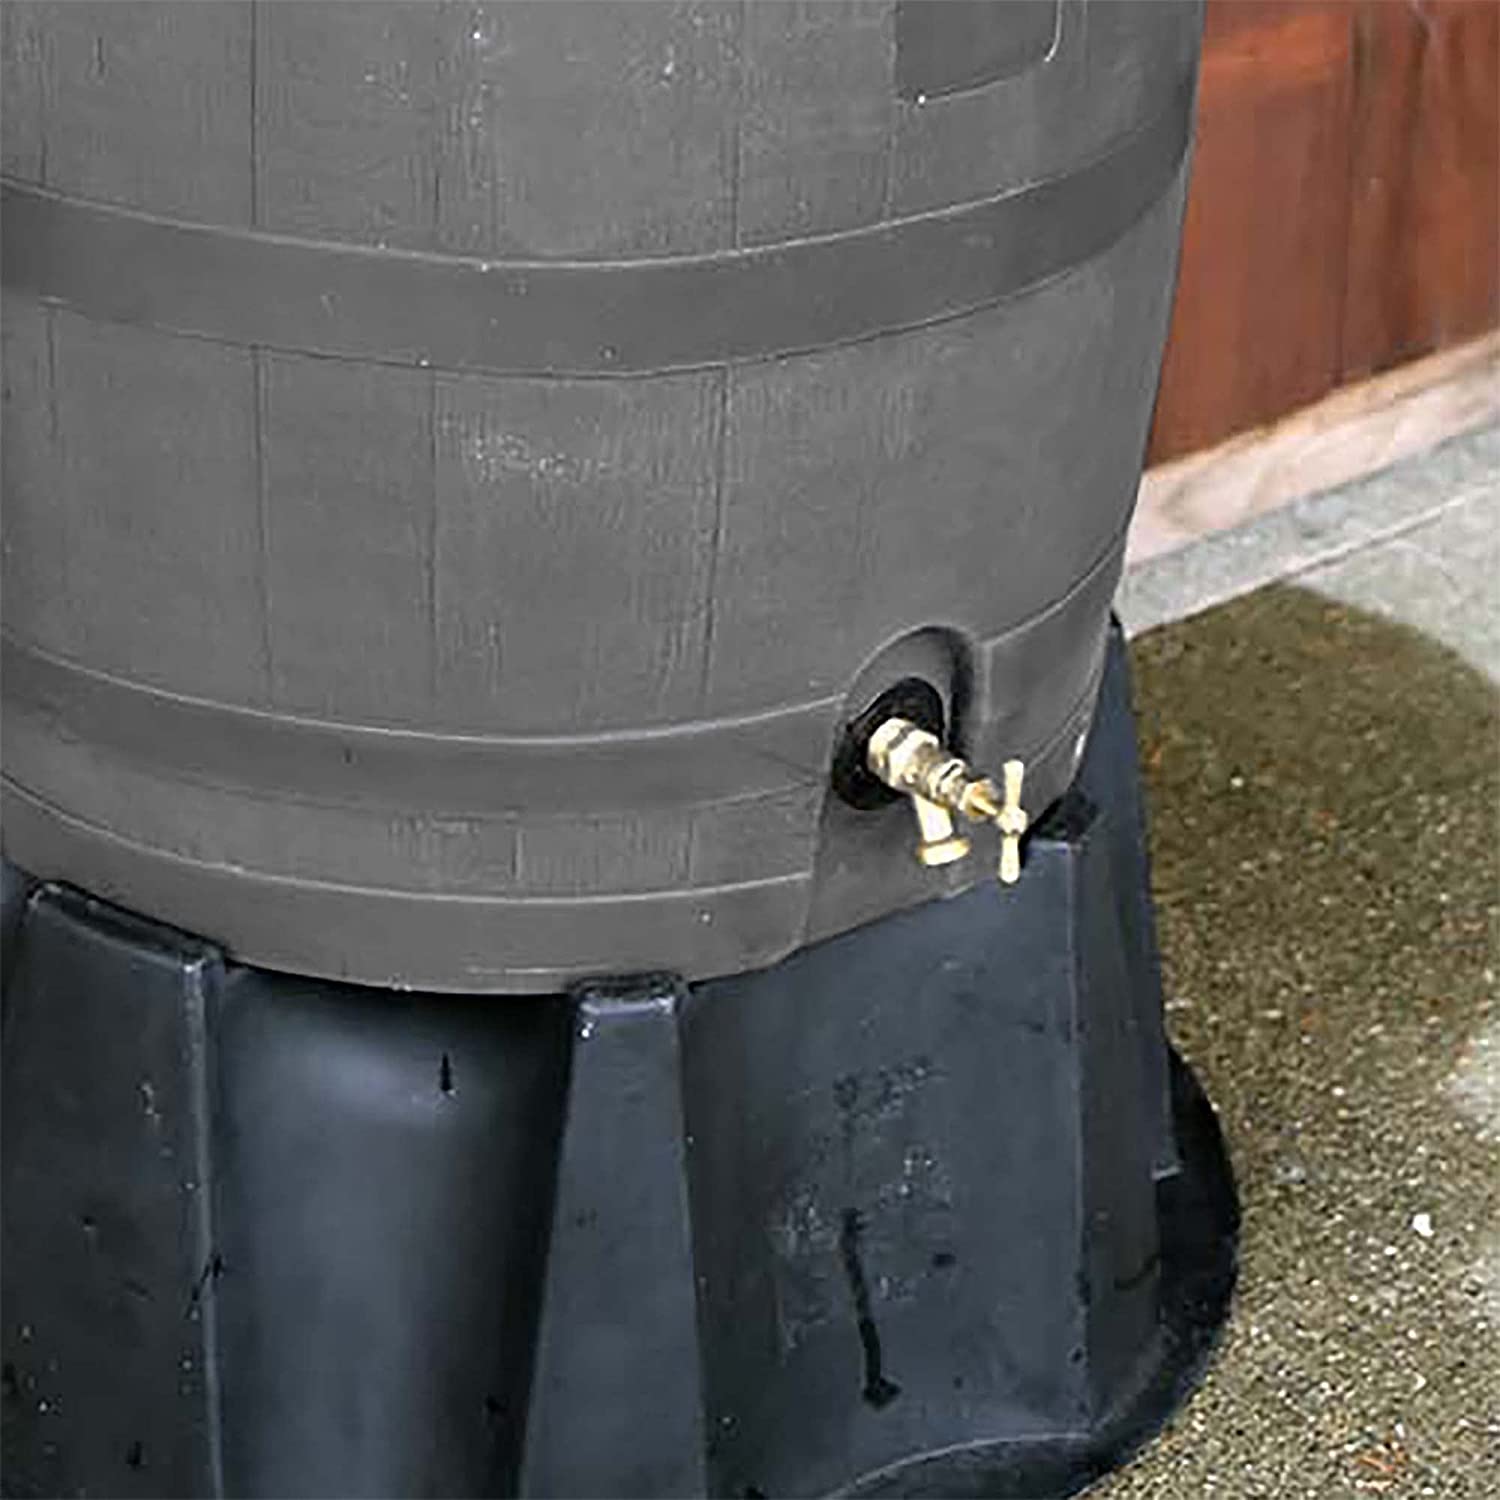 50 Gallon Rain Barrel with Brass Spigot